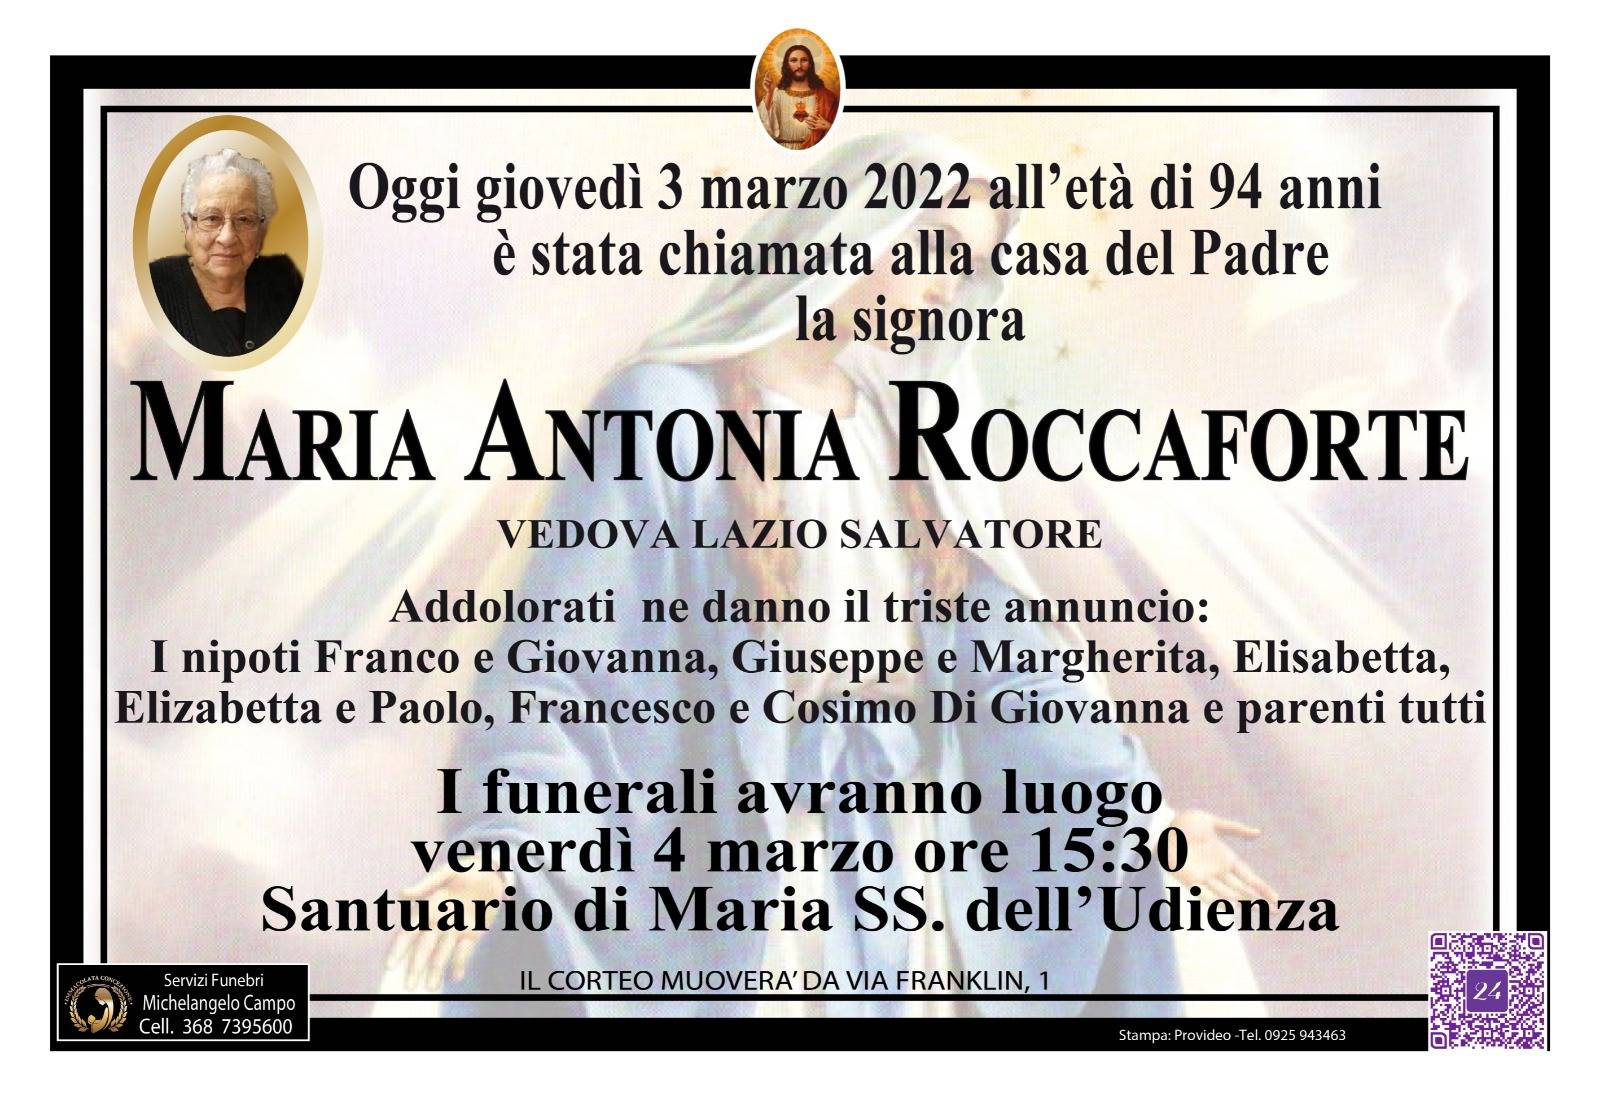 Maria Antonia Roccaforte